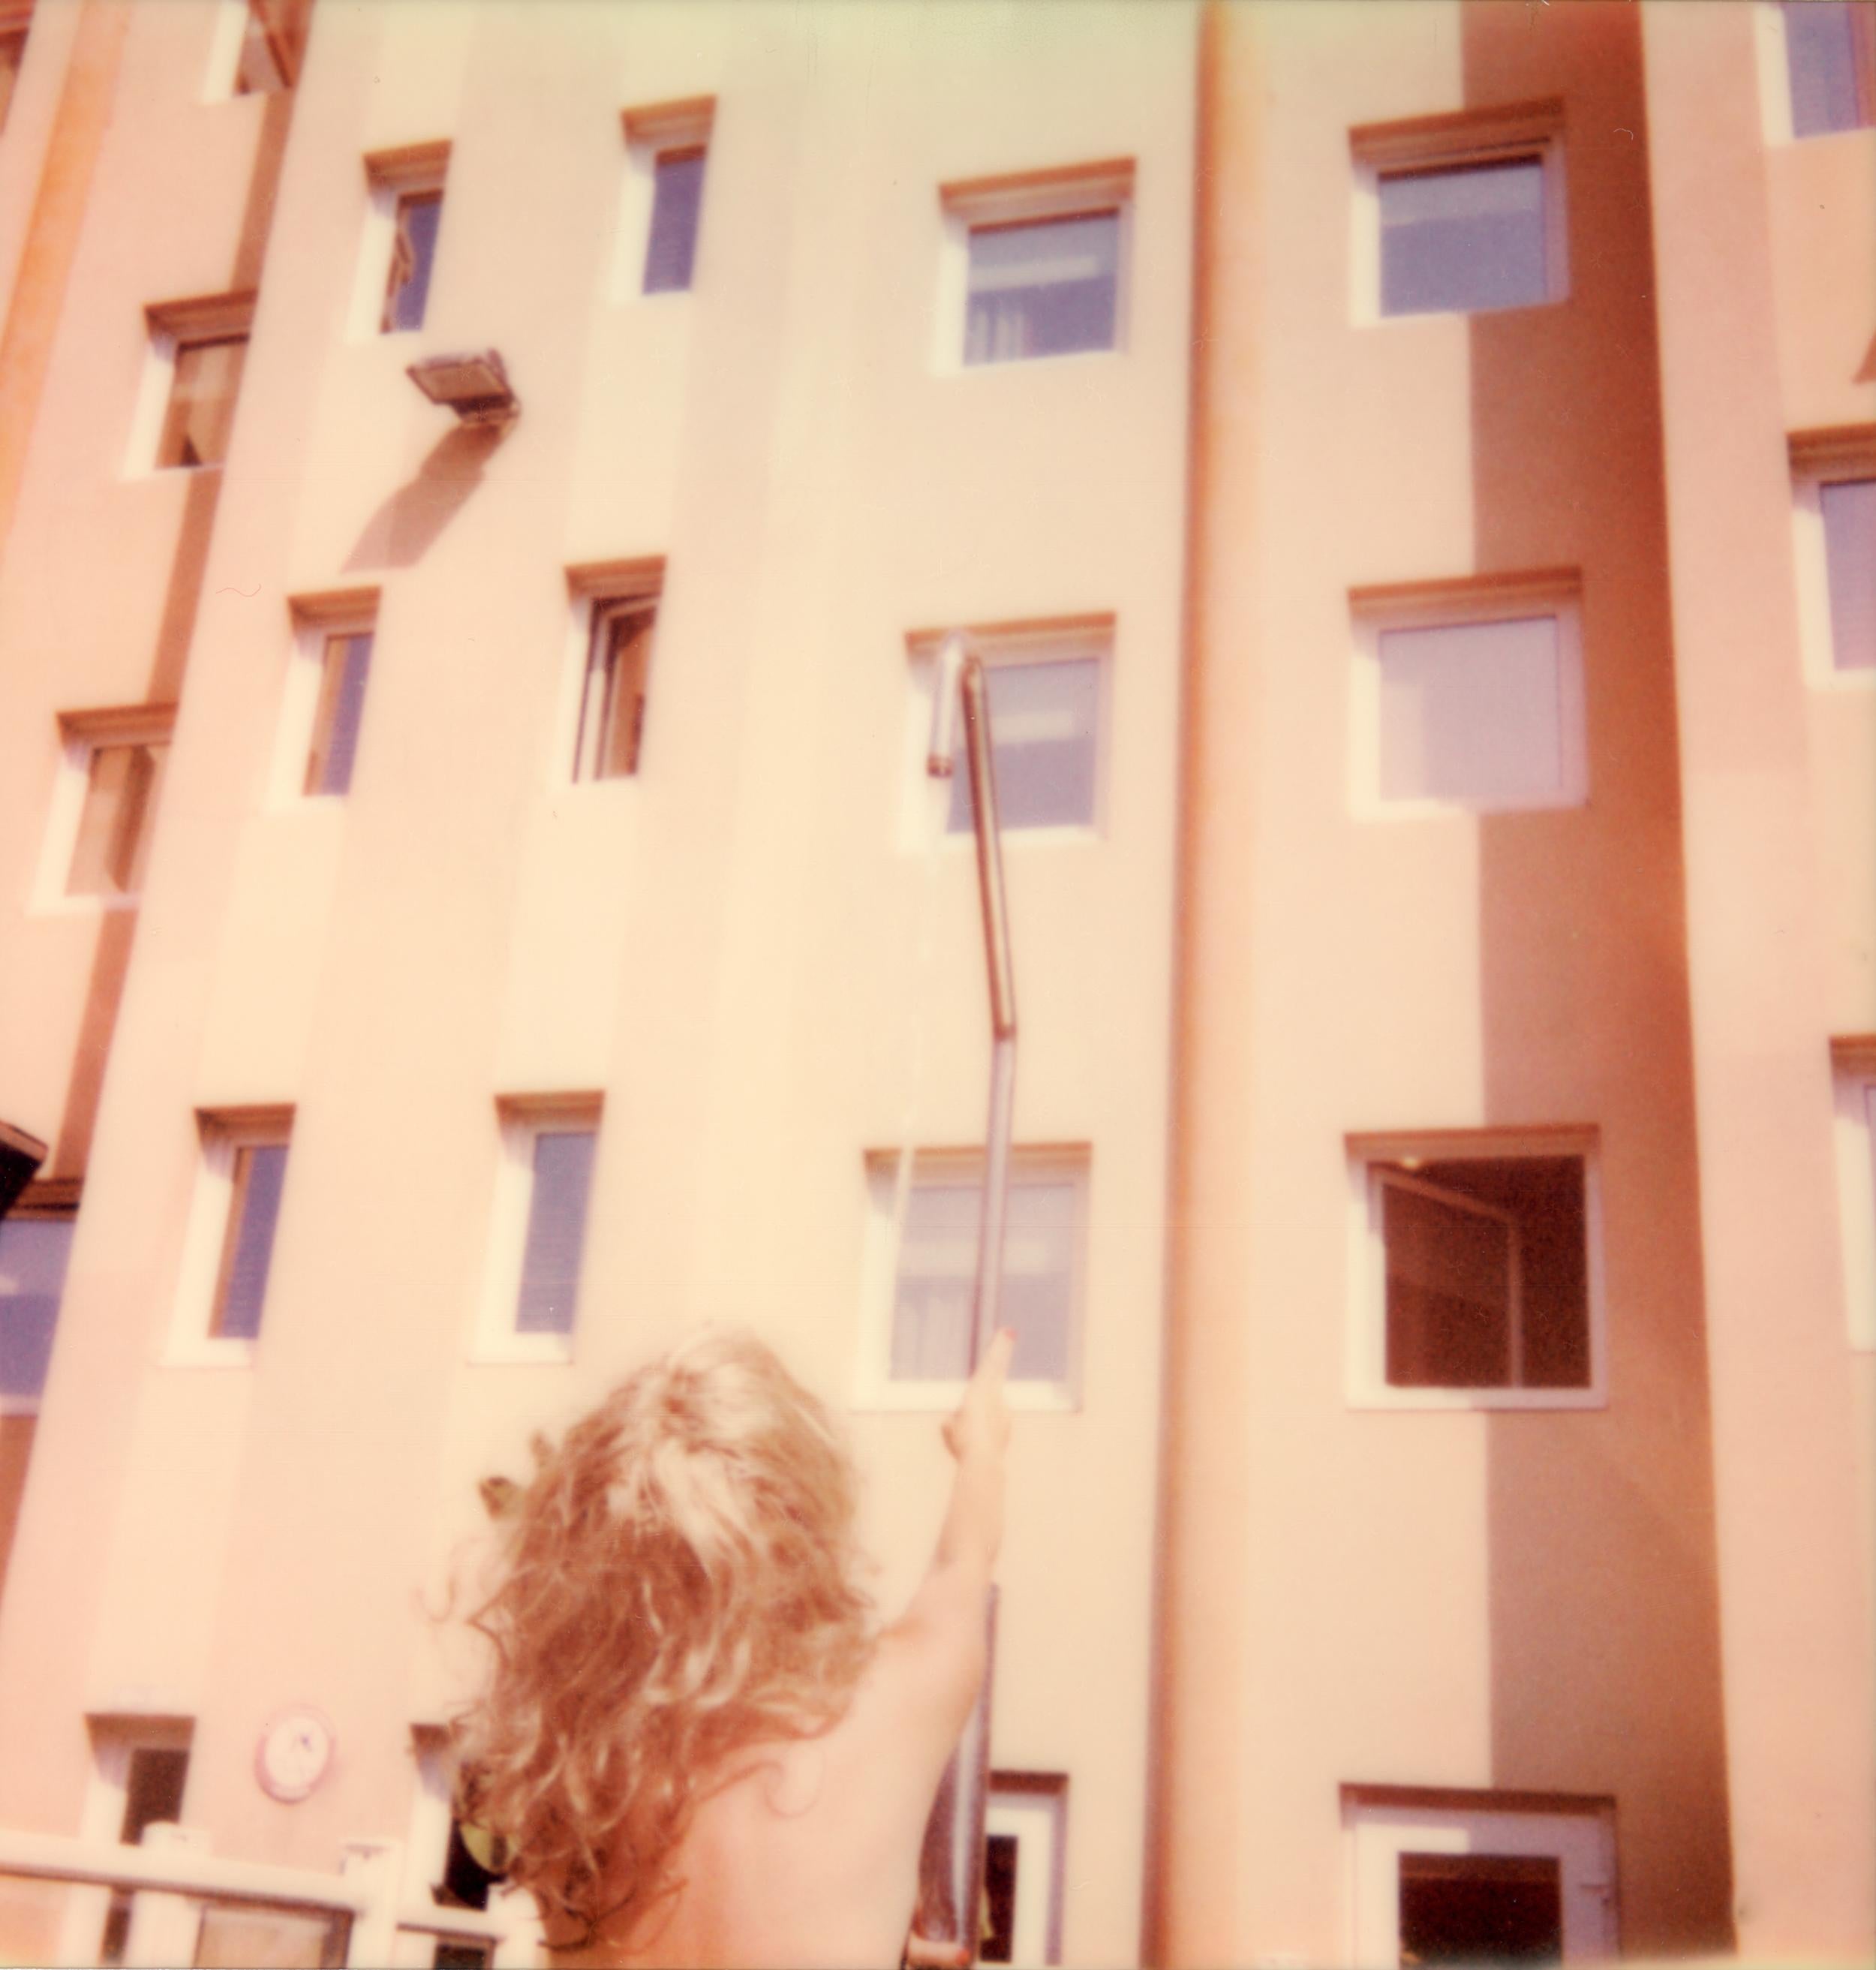 Clare Marie Bailey Nude Photograph – Hotel Shower – Zeitgenössisch, Polaroid, Frau, 21. Jahrhundert